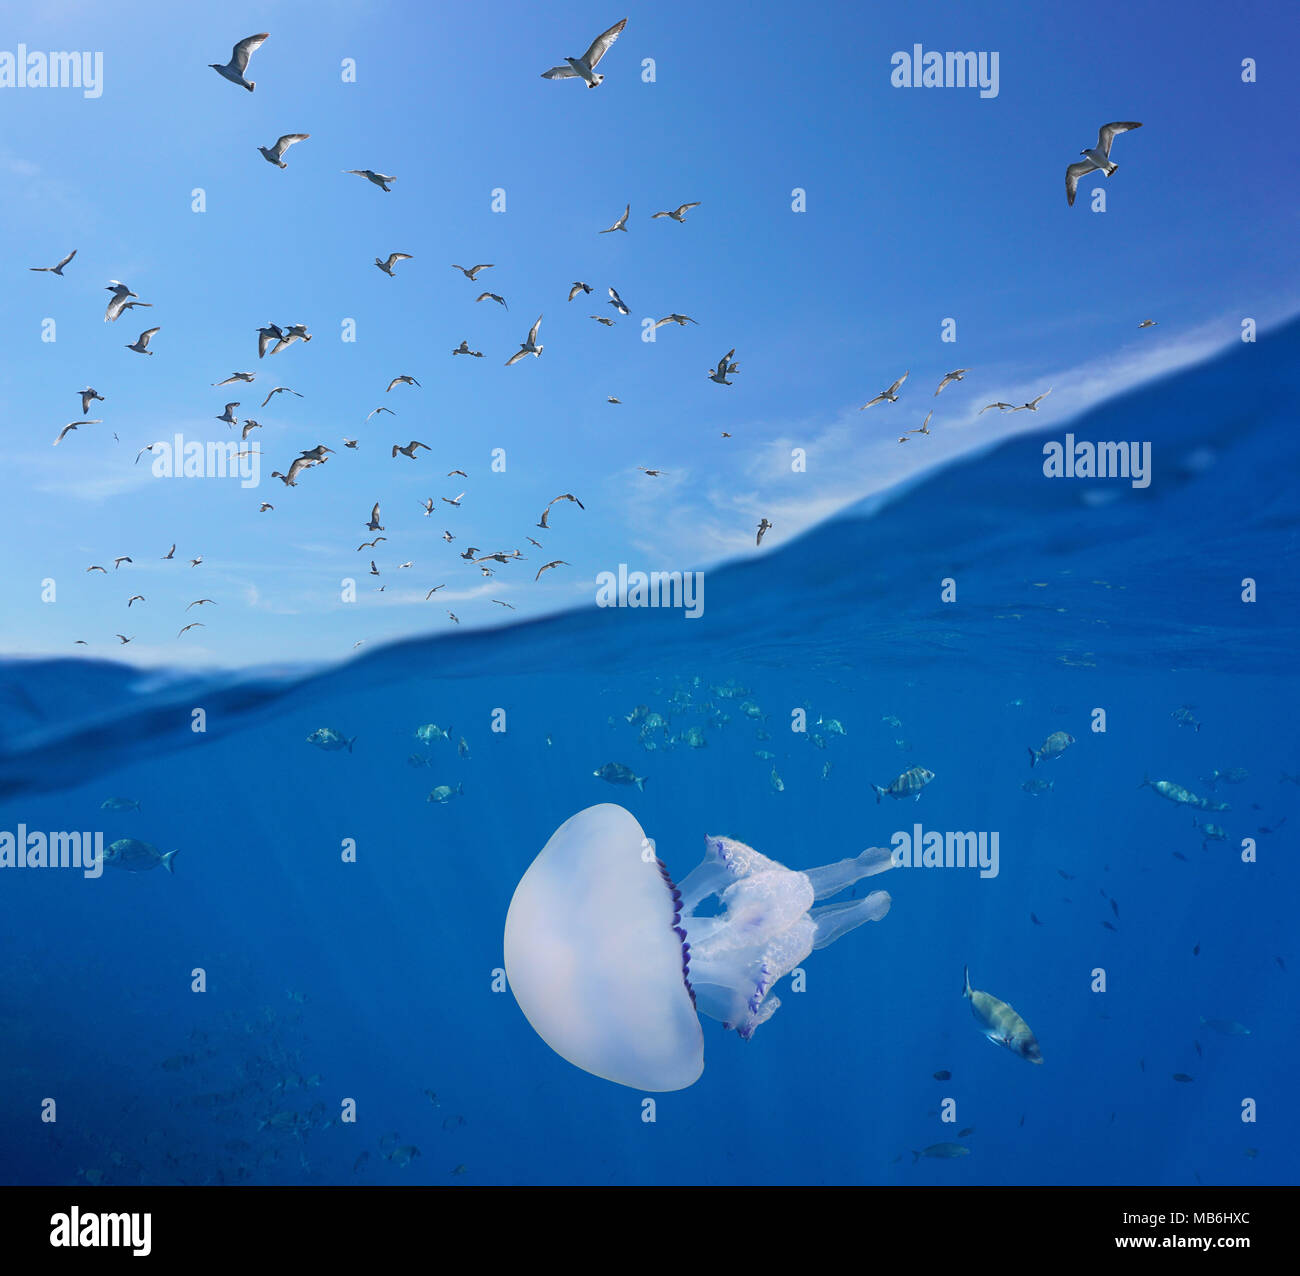 Mediterrane Möwen fliegen in den Himmel und fischt mit einem Faß Quallen Unterwasserwelt Sea, geteilte Ansicht oberhalb und unterhalb der Wasseroberfläche, Spanien, Costa Brava Stockfoto